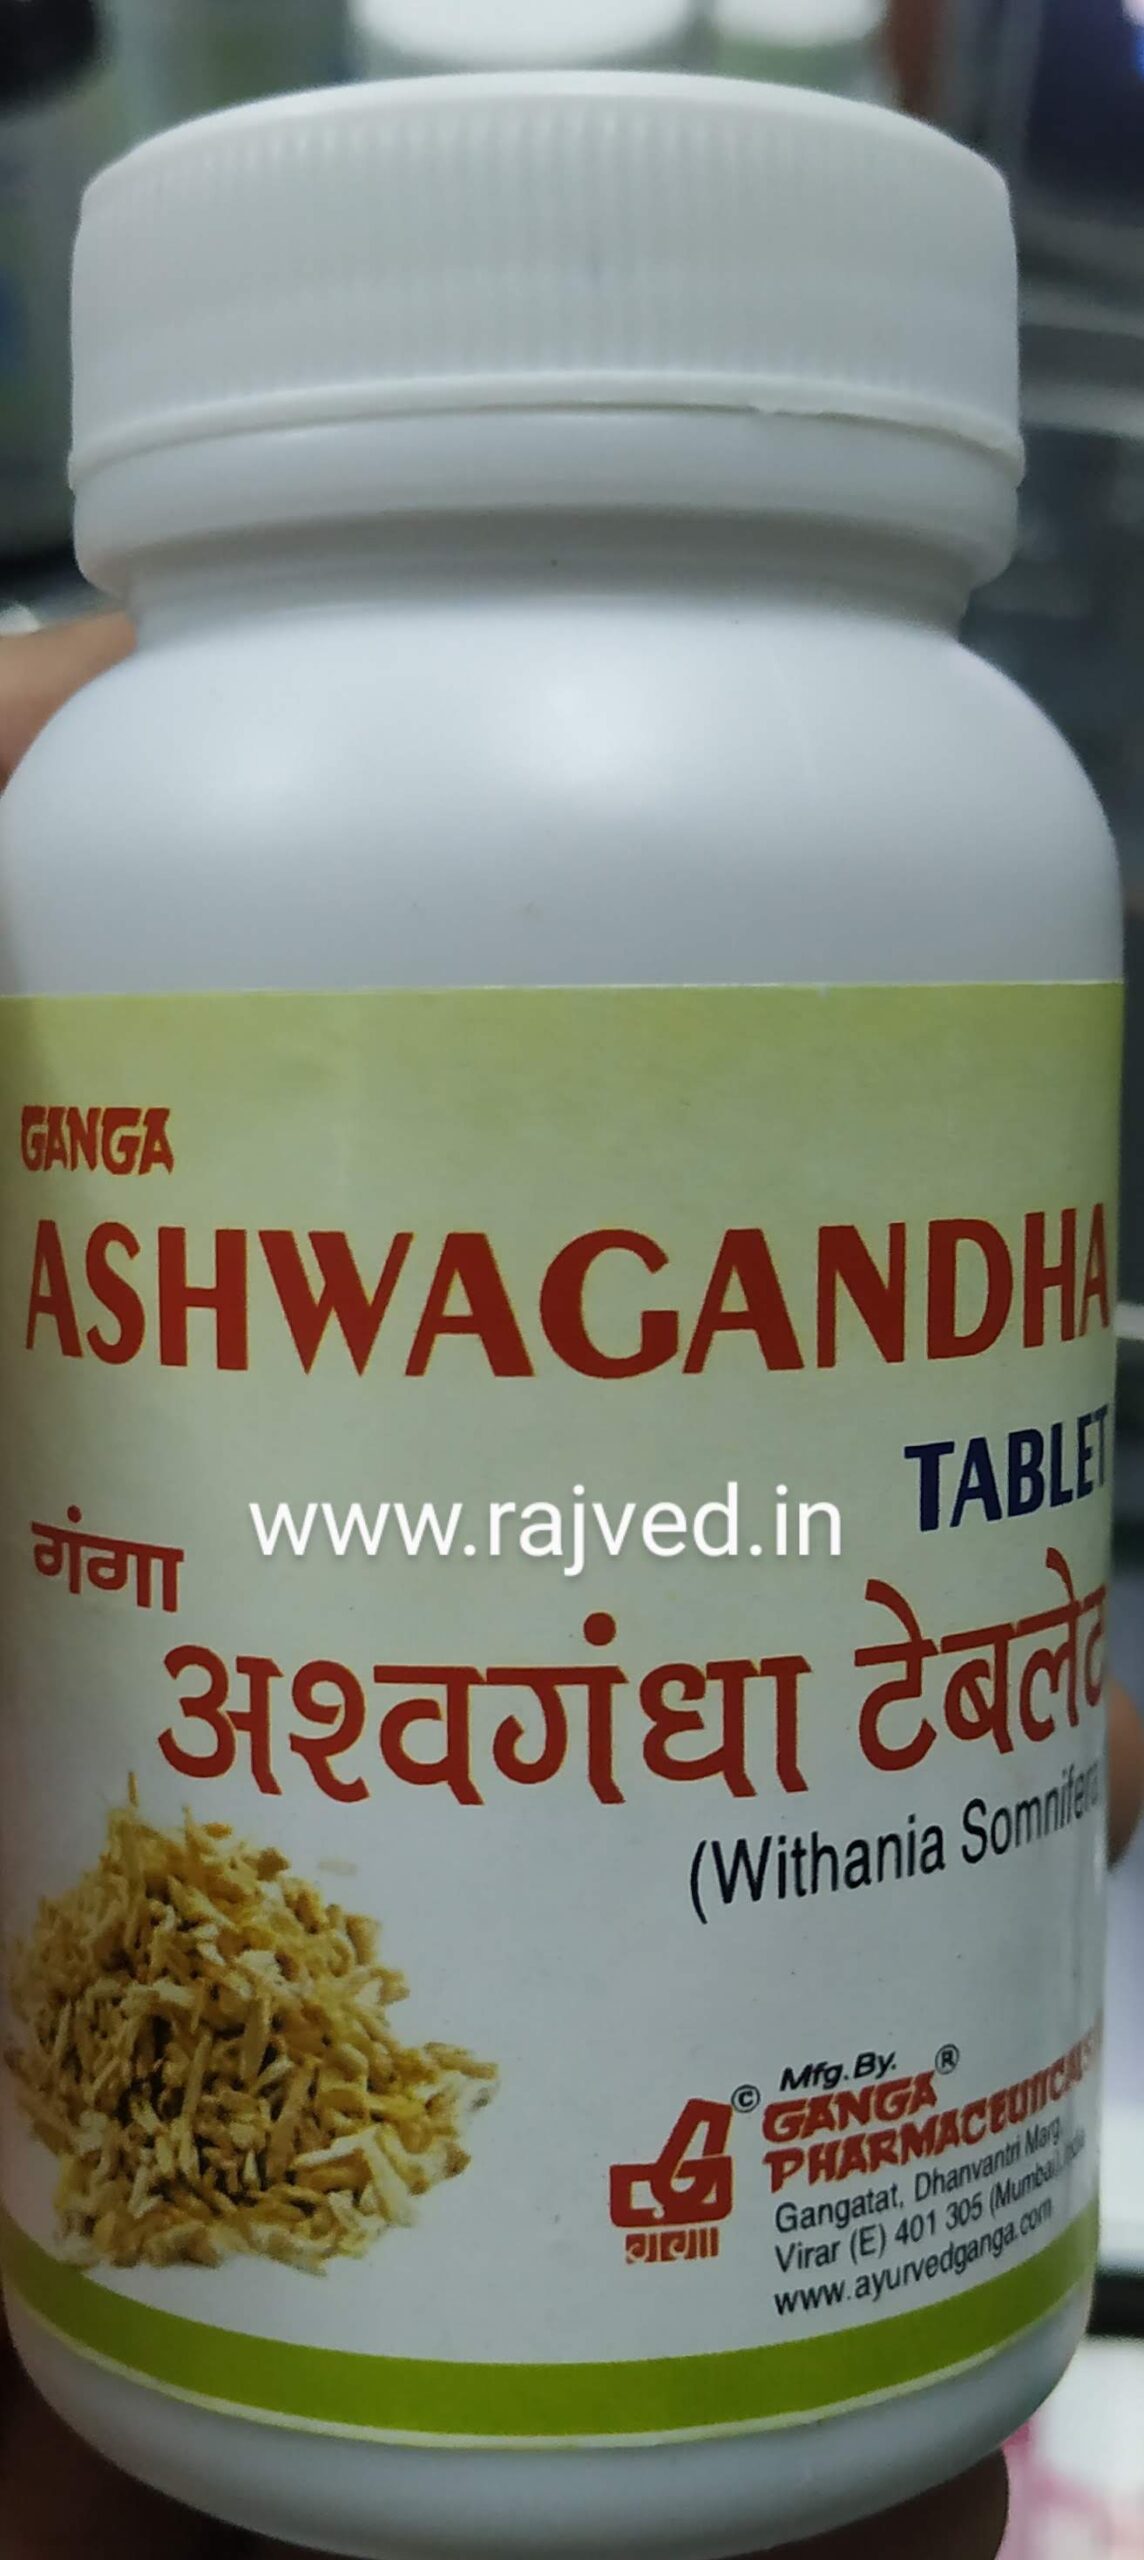 ashwagandha tablet 100 tab upto 20% off Ganga Pharmaceuticals